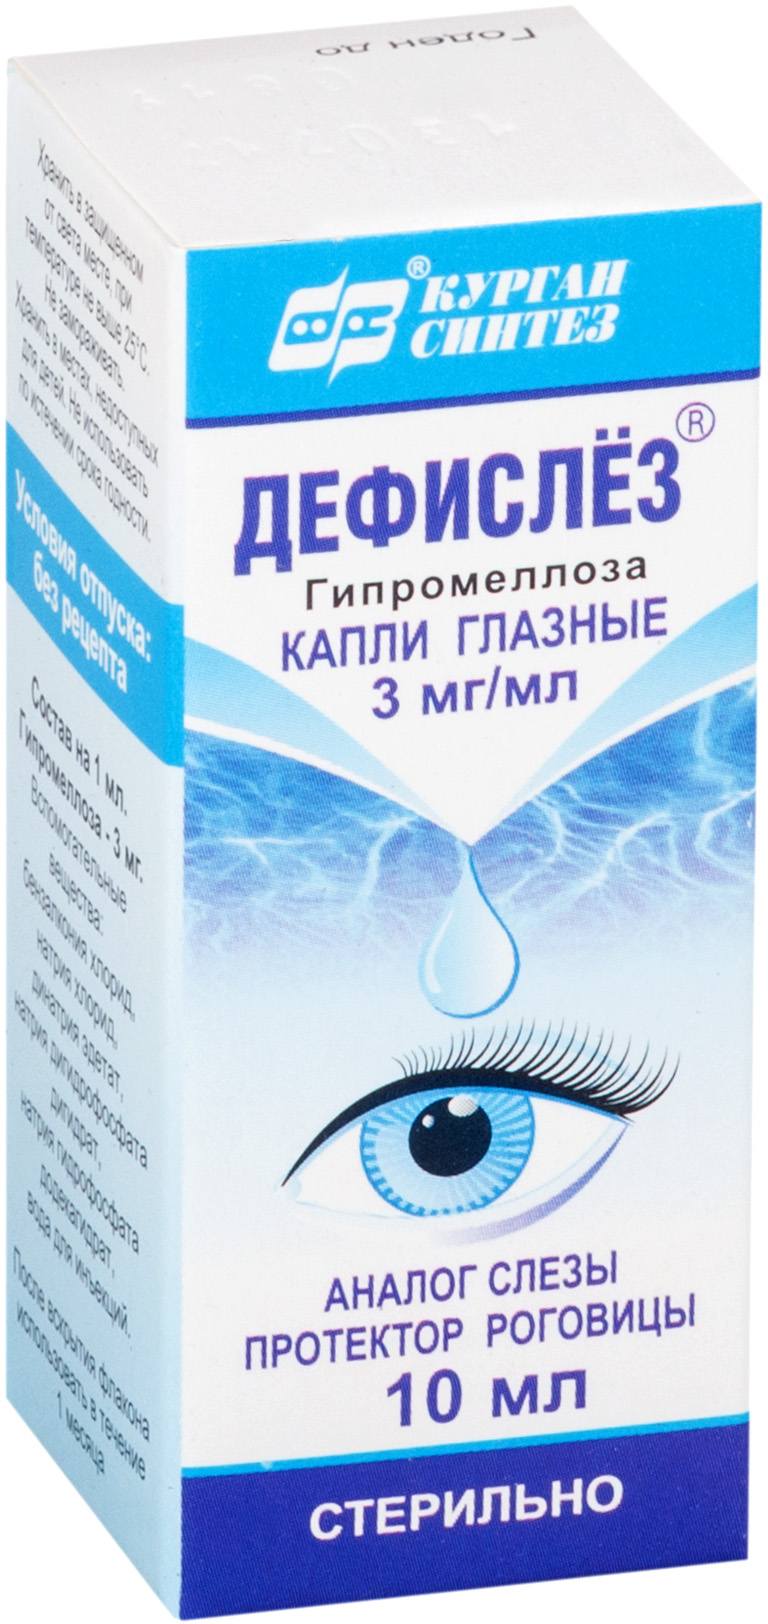 Дефислез, капли глазные 3 мг/мл, 10 мл оптические иллюзии